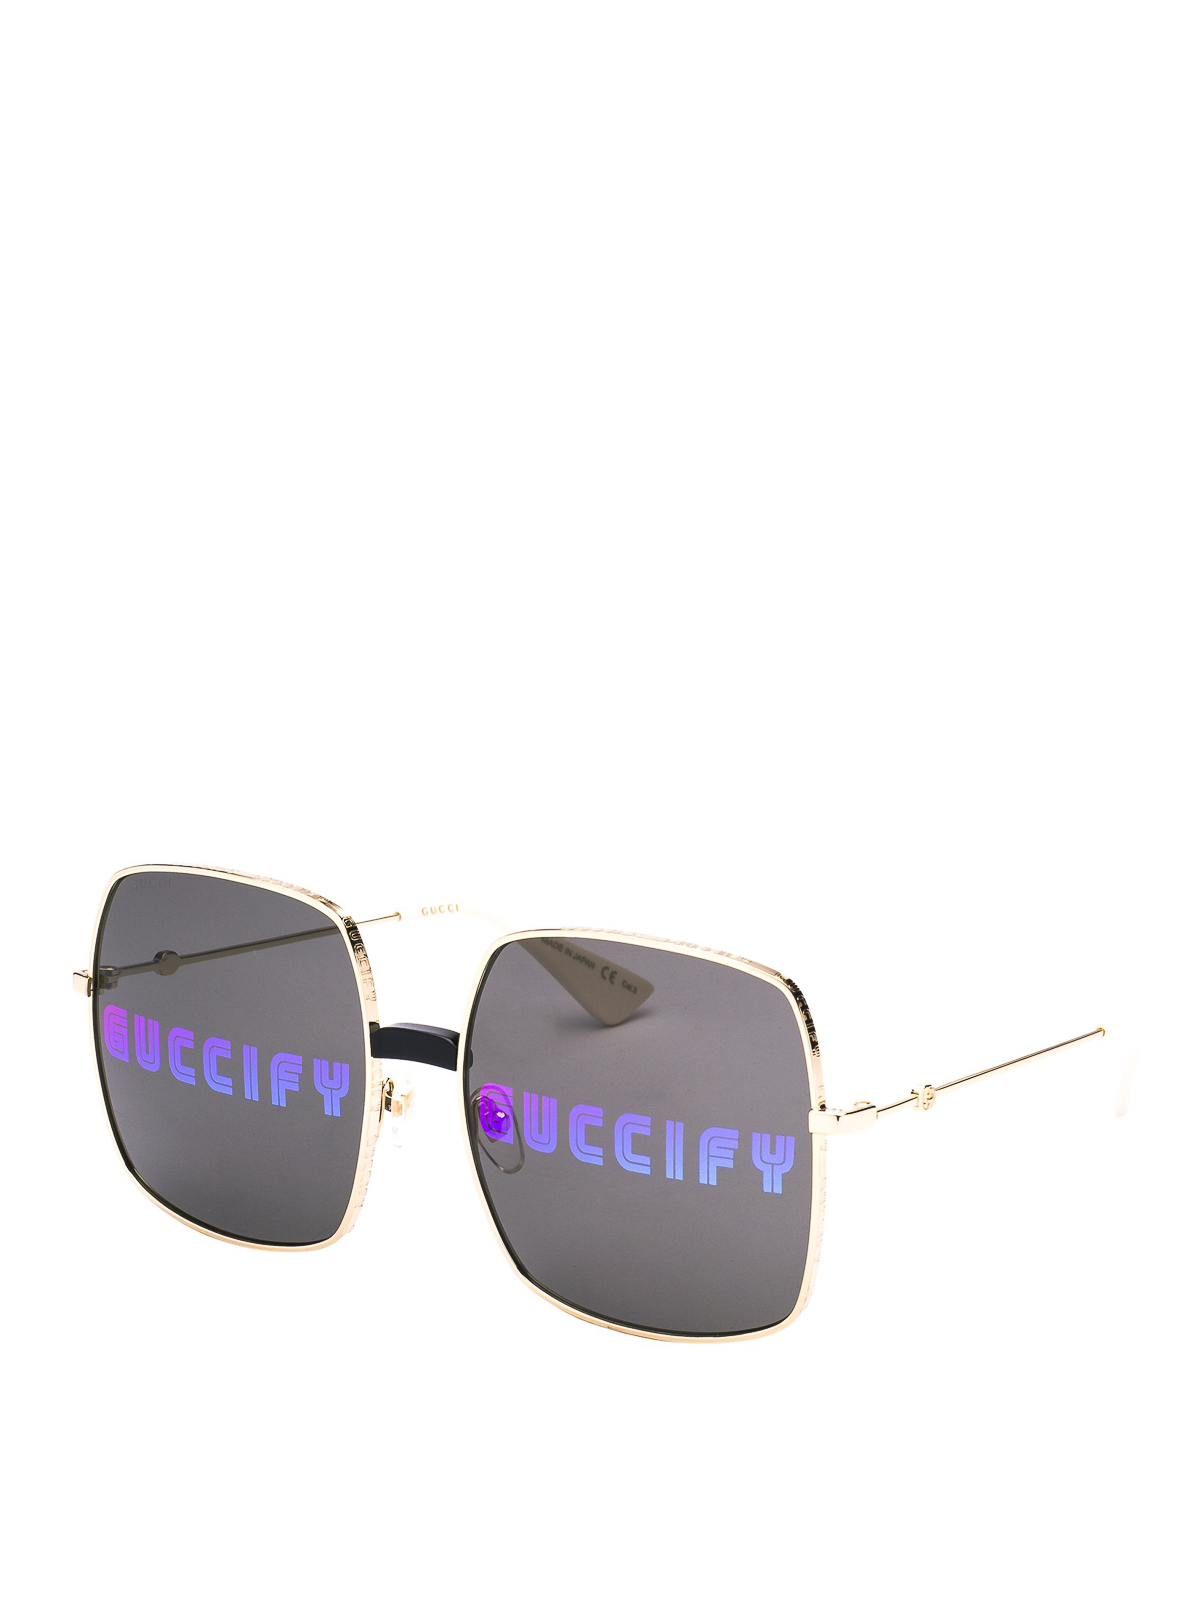 Gucci - Guccify print sunglasses 